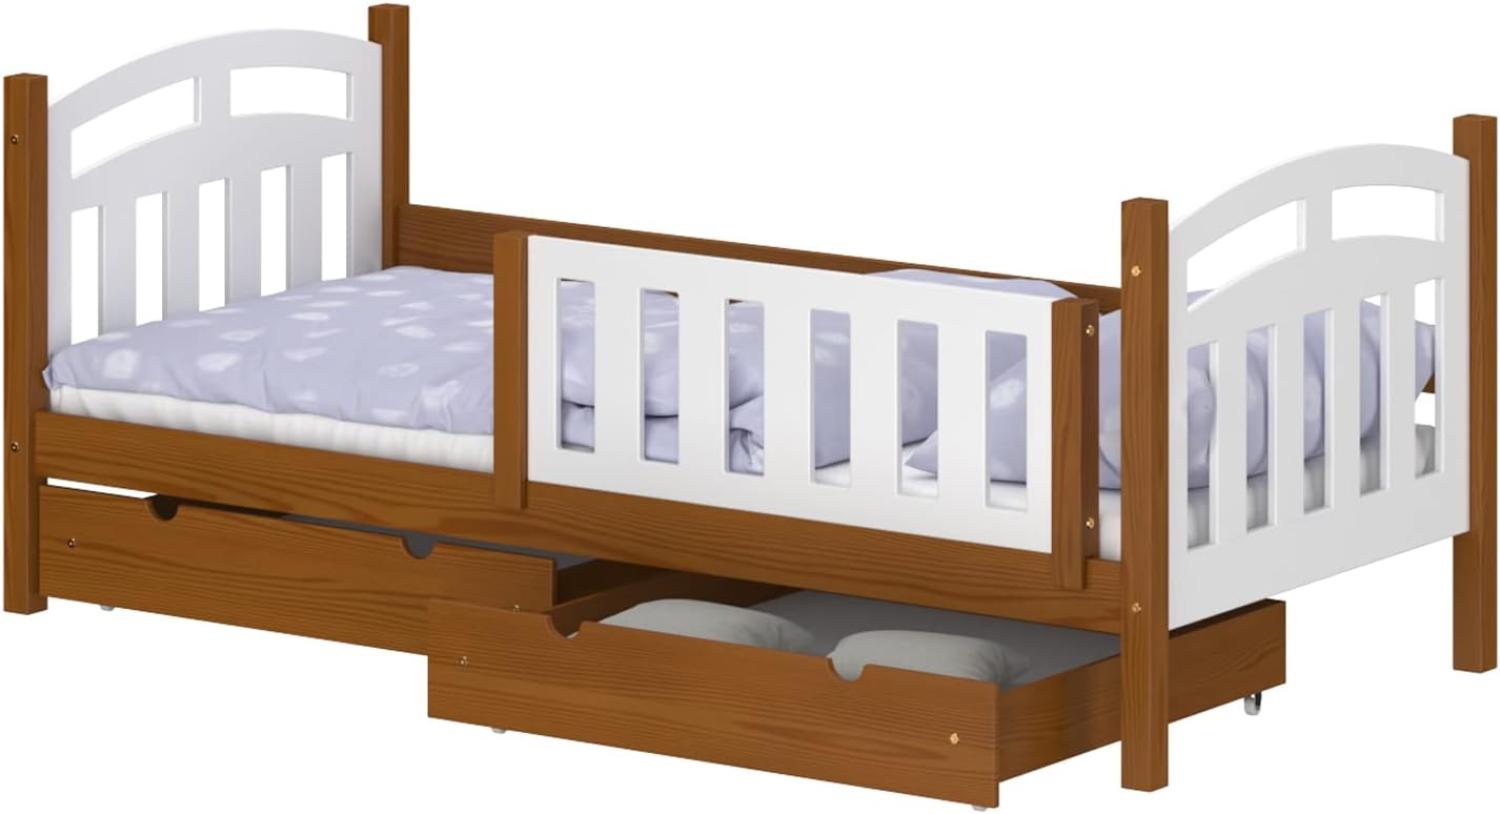 WNM Group Kinderbett mit Rausfallschutz Suzie - Jugenbett aus Massivholz - Bett mit 2 Schubladen für Mädchen und Jungen - Funktionsbett 200x90 cm - Braun Bild 1